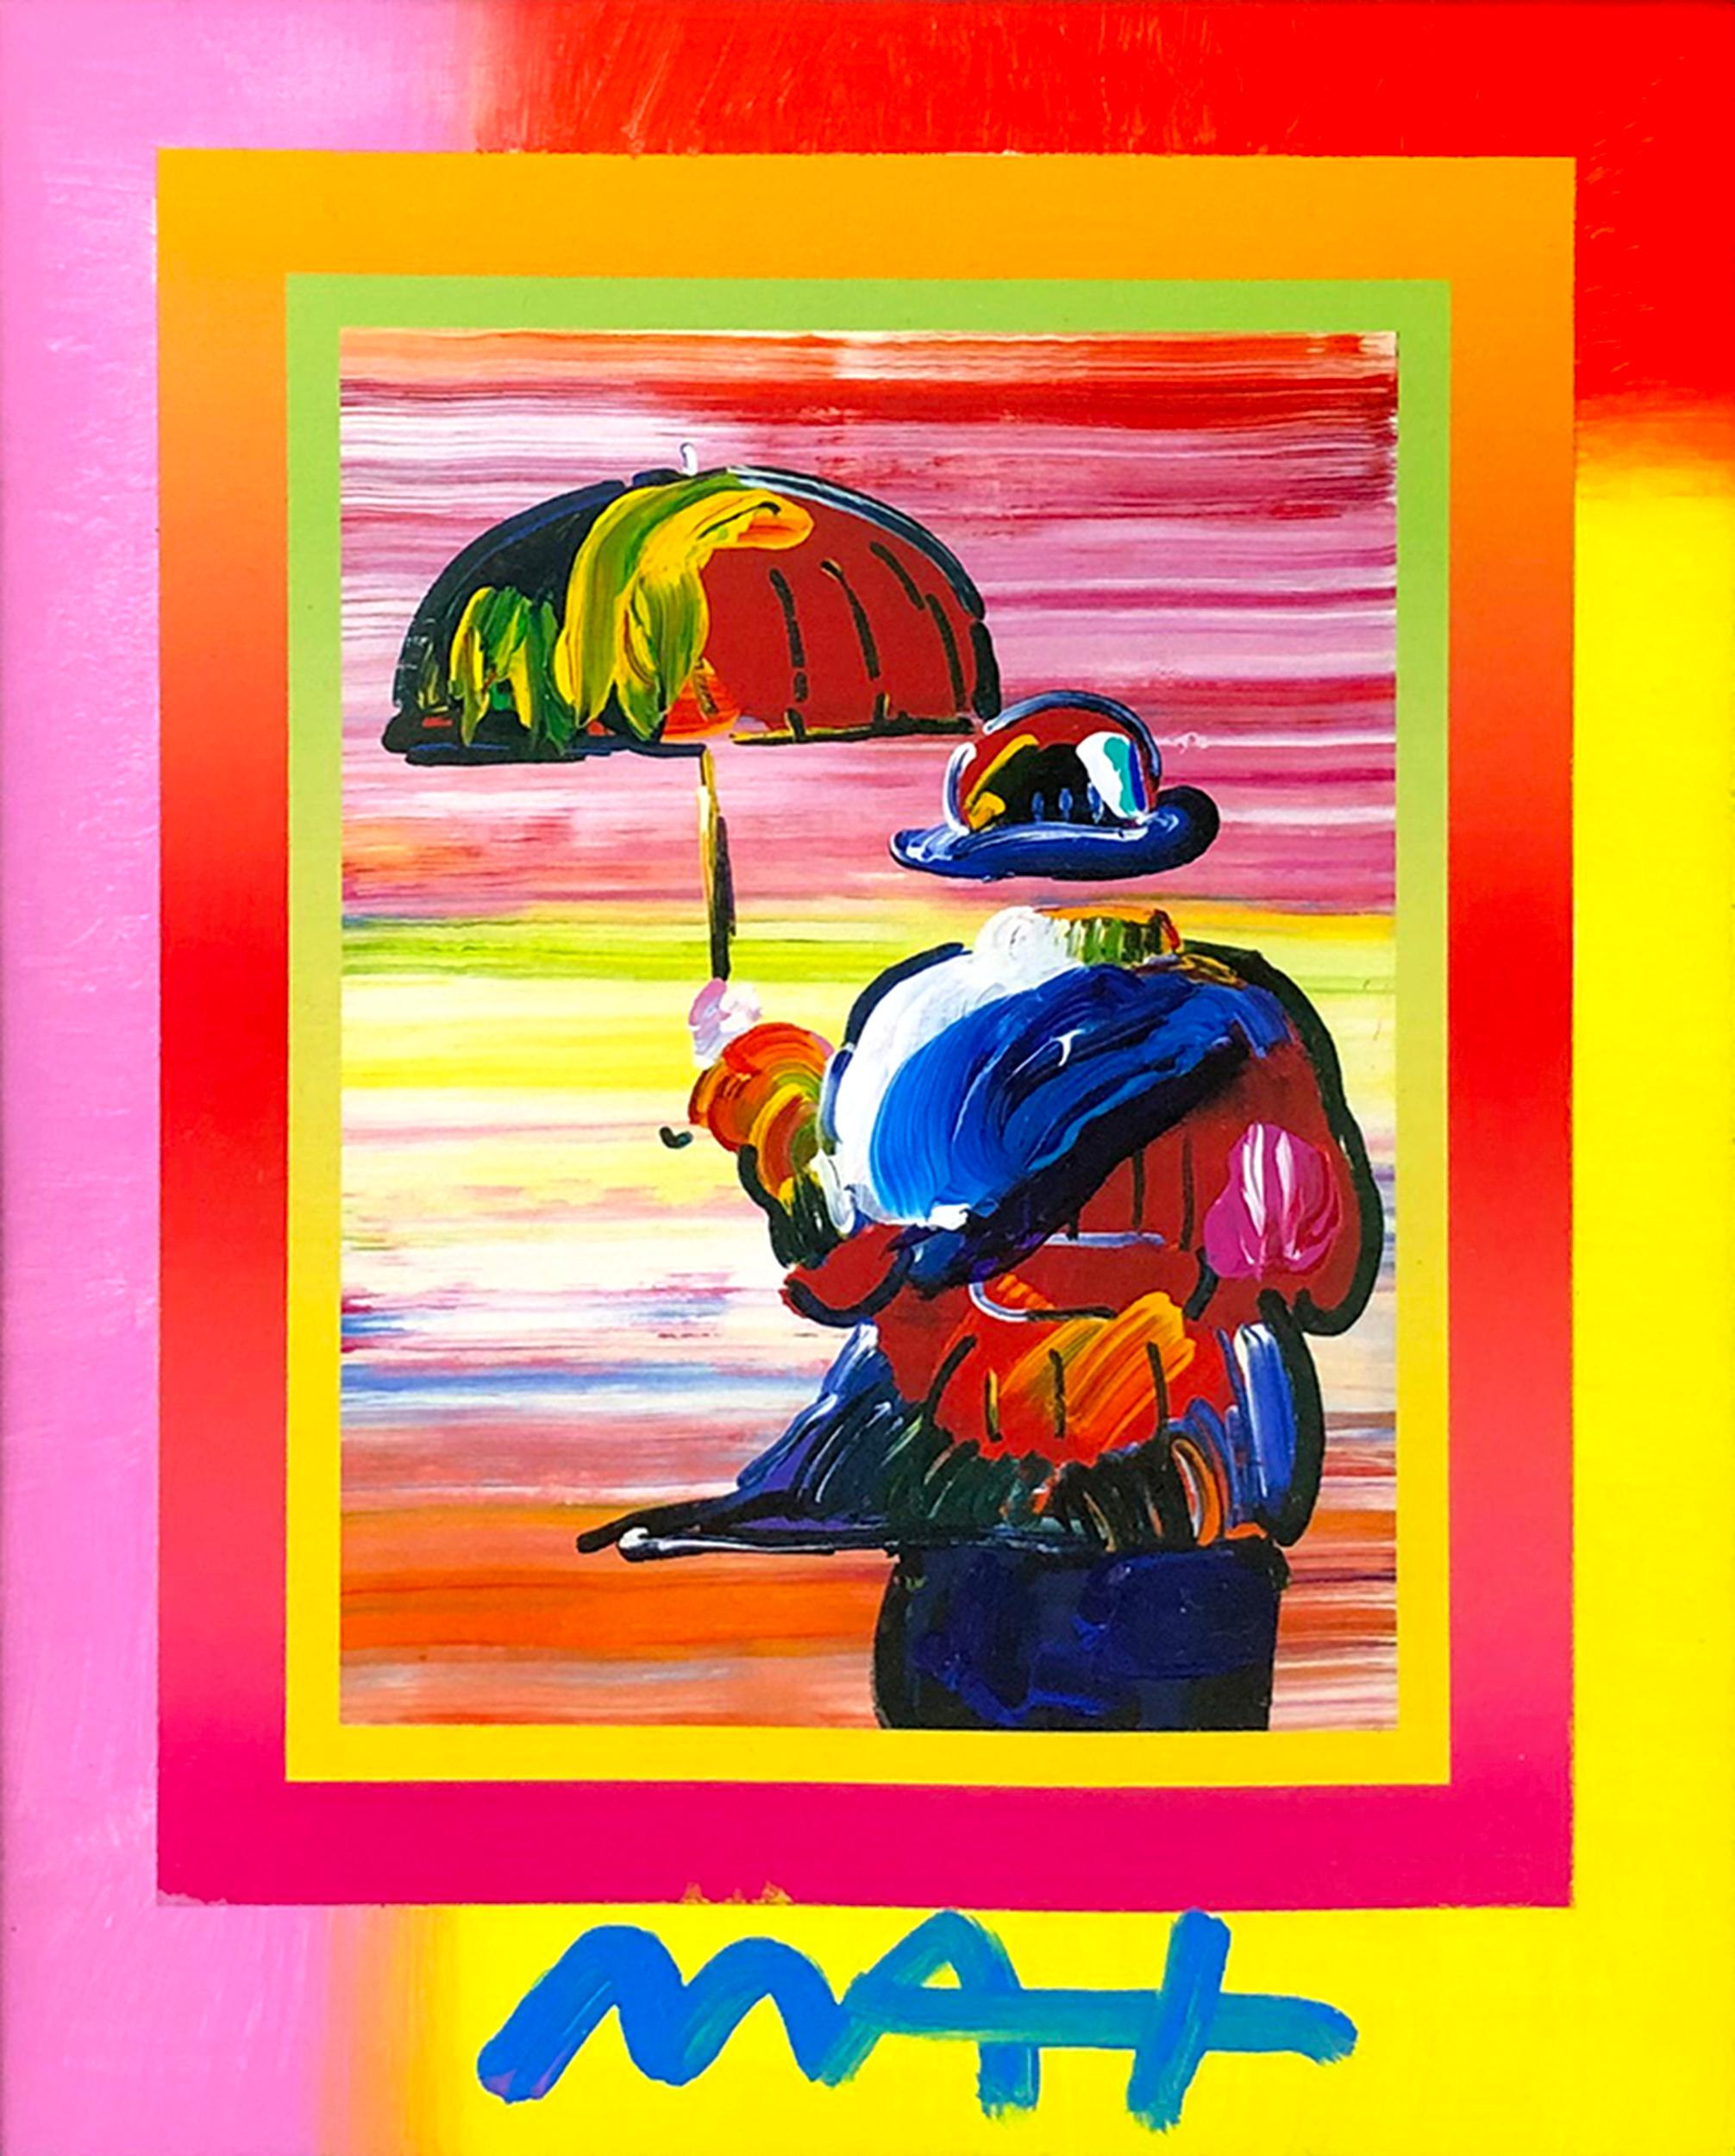 UMBRELLA MAN (OVERPAINT) - Pop Art Mixed Media Art by Peter Max